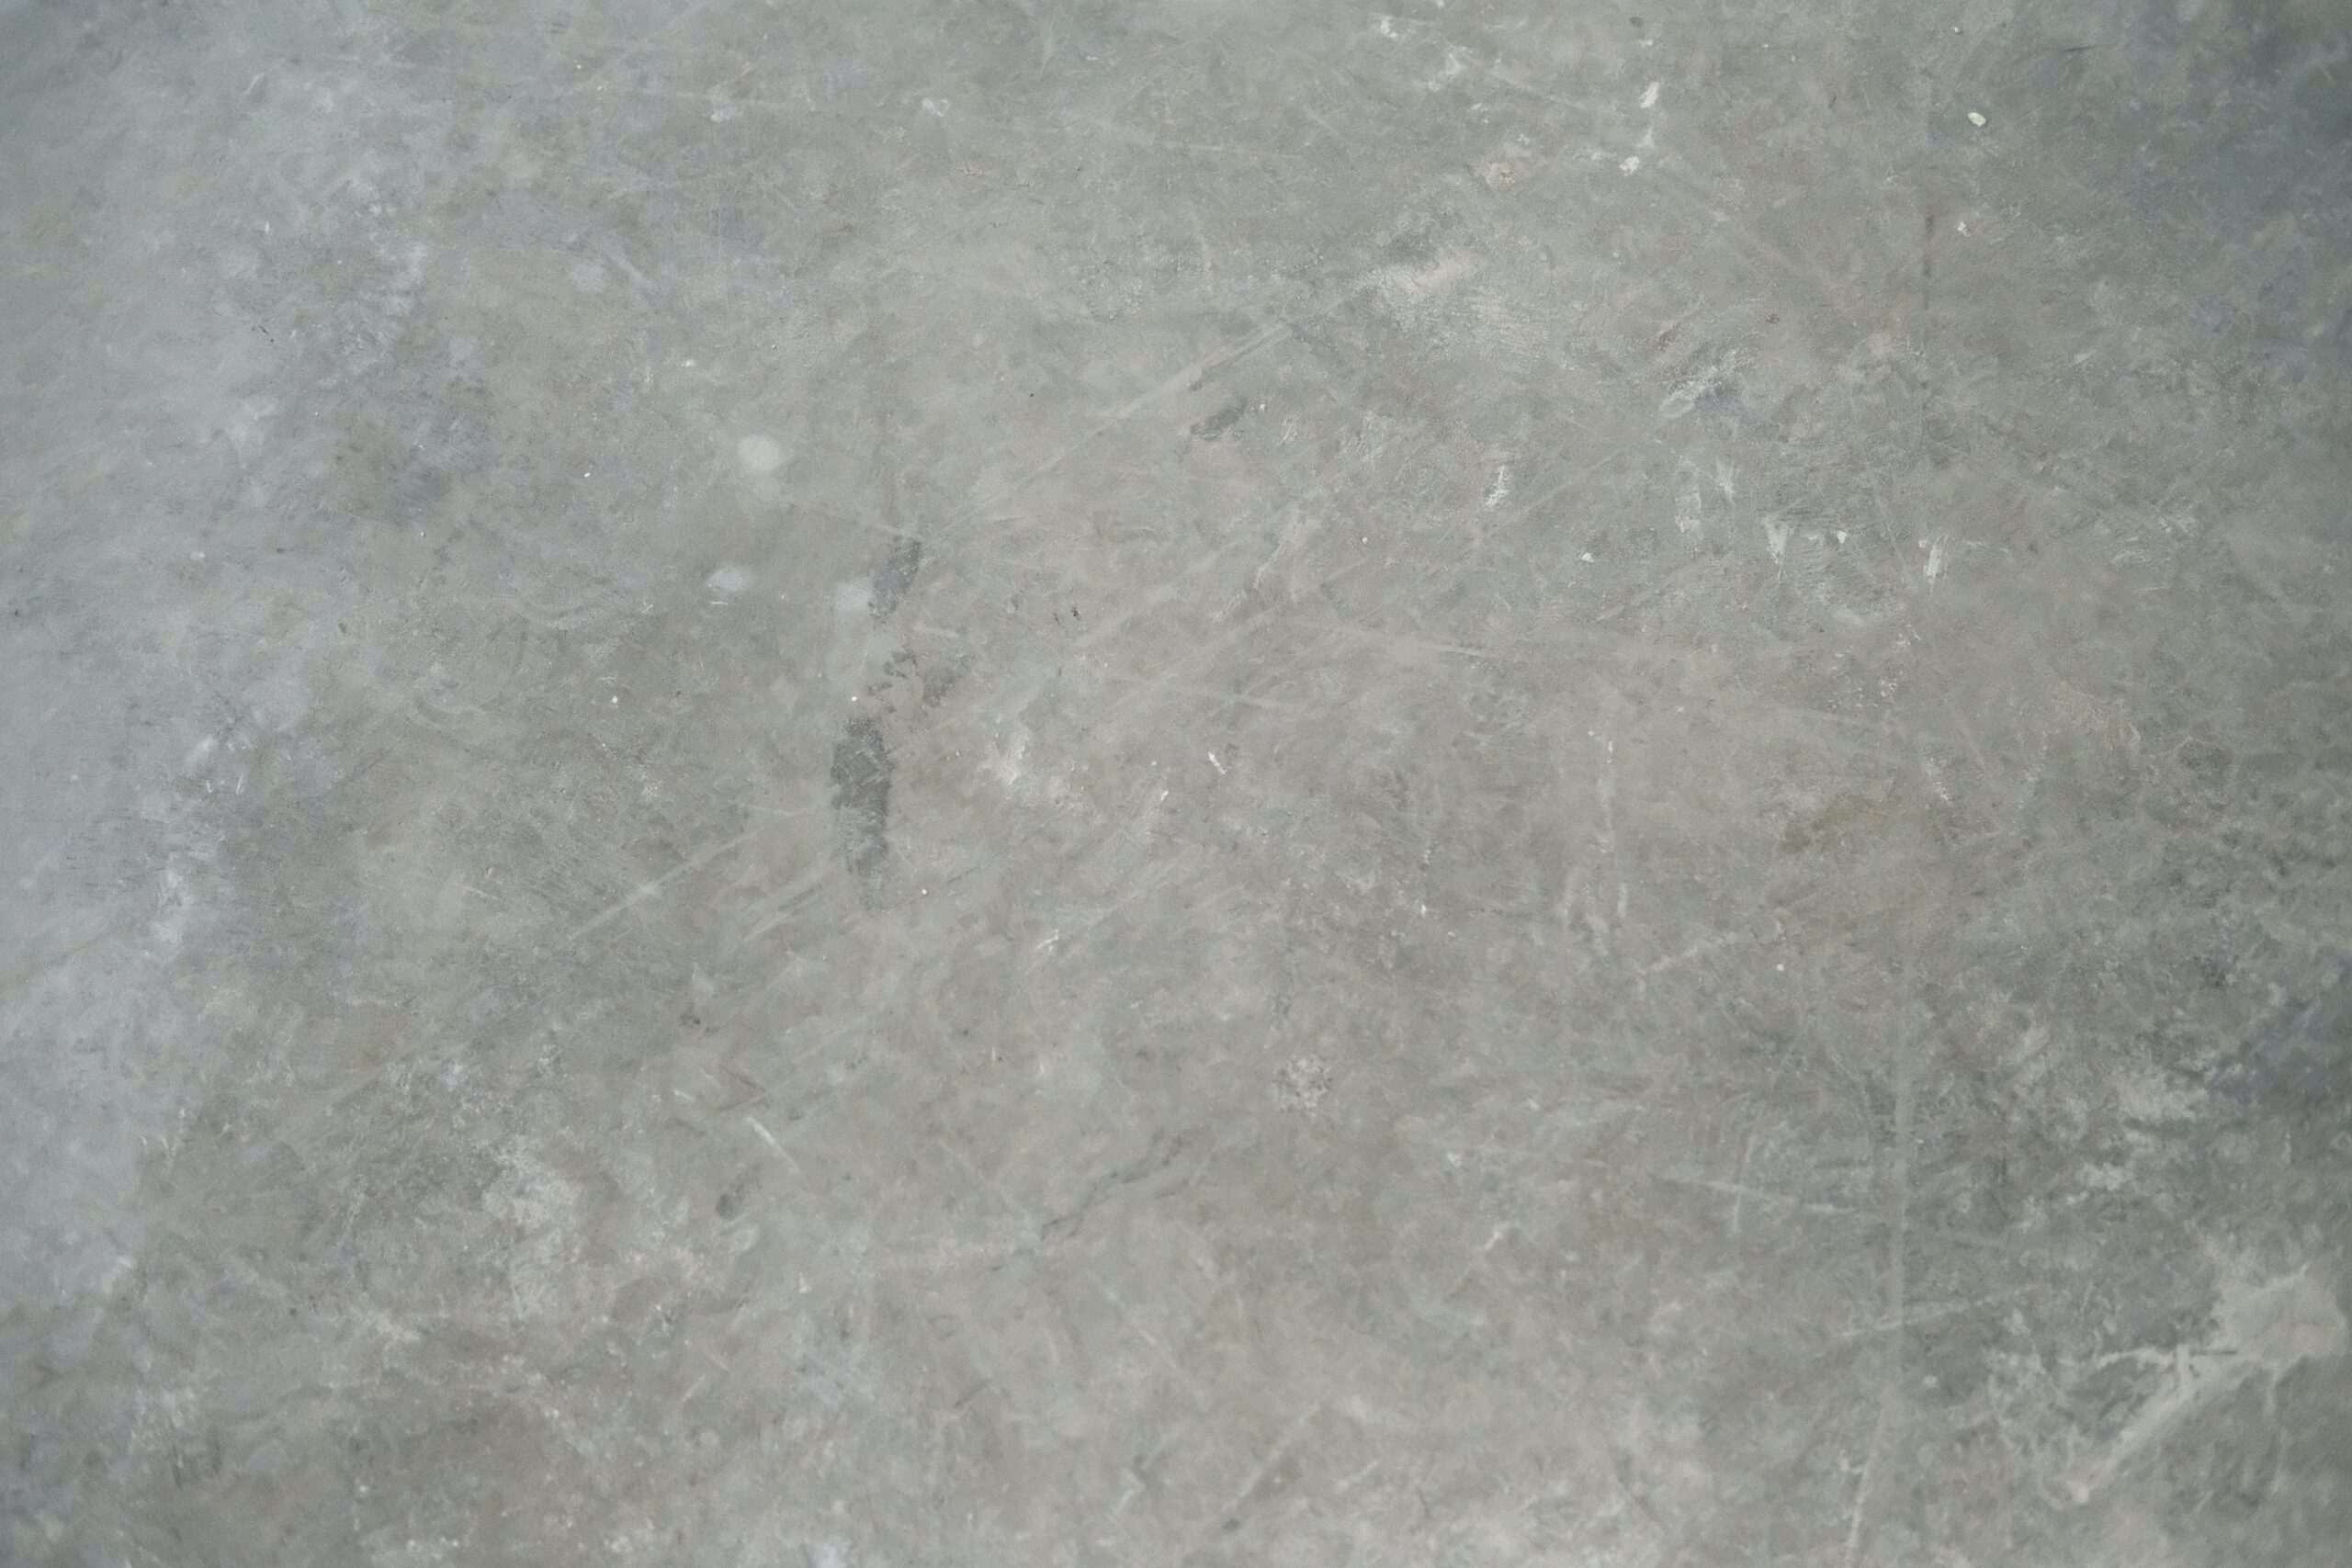 Utilize the brutalist interior design concept for this kitchen floor idea. Pictured: Concrete flooring.